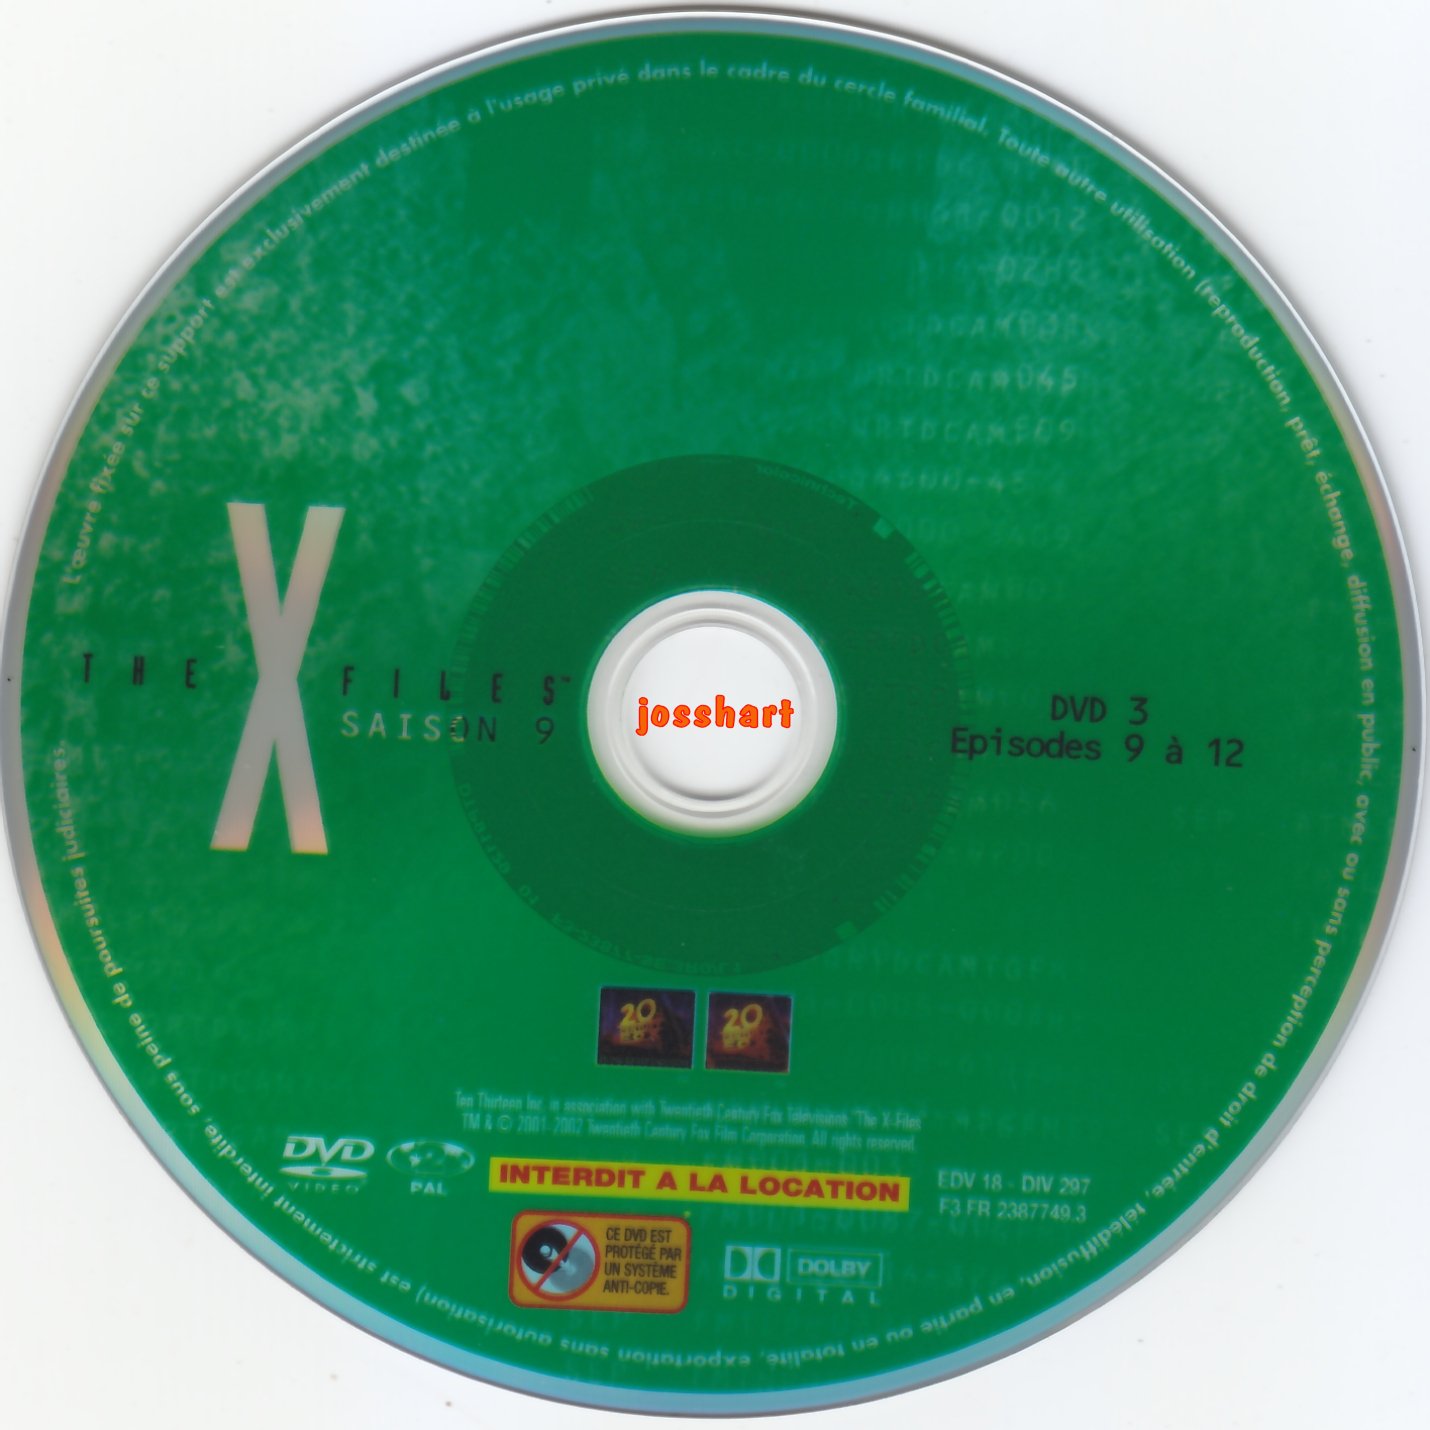 The X Files Saison 9 DVD 3 v2